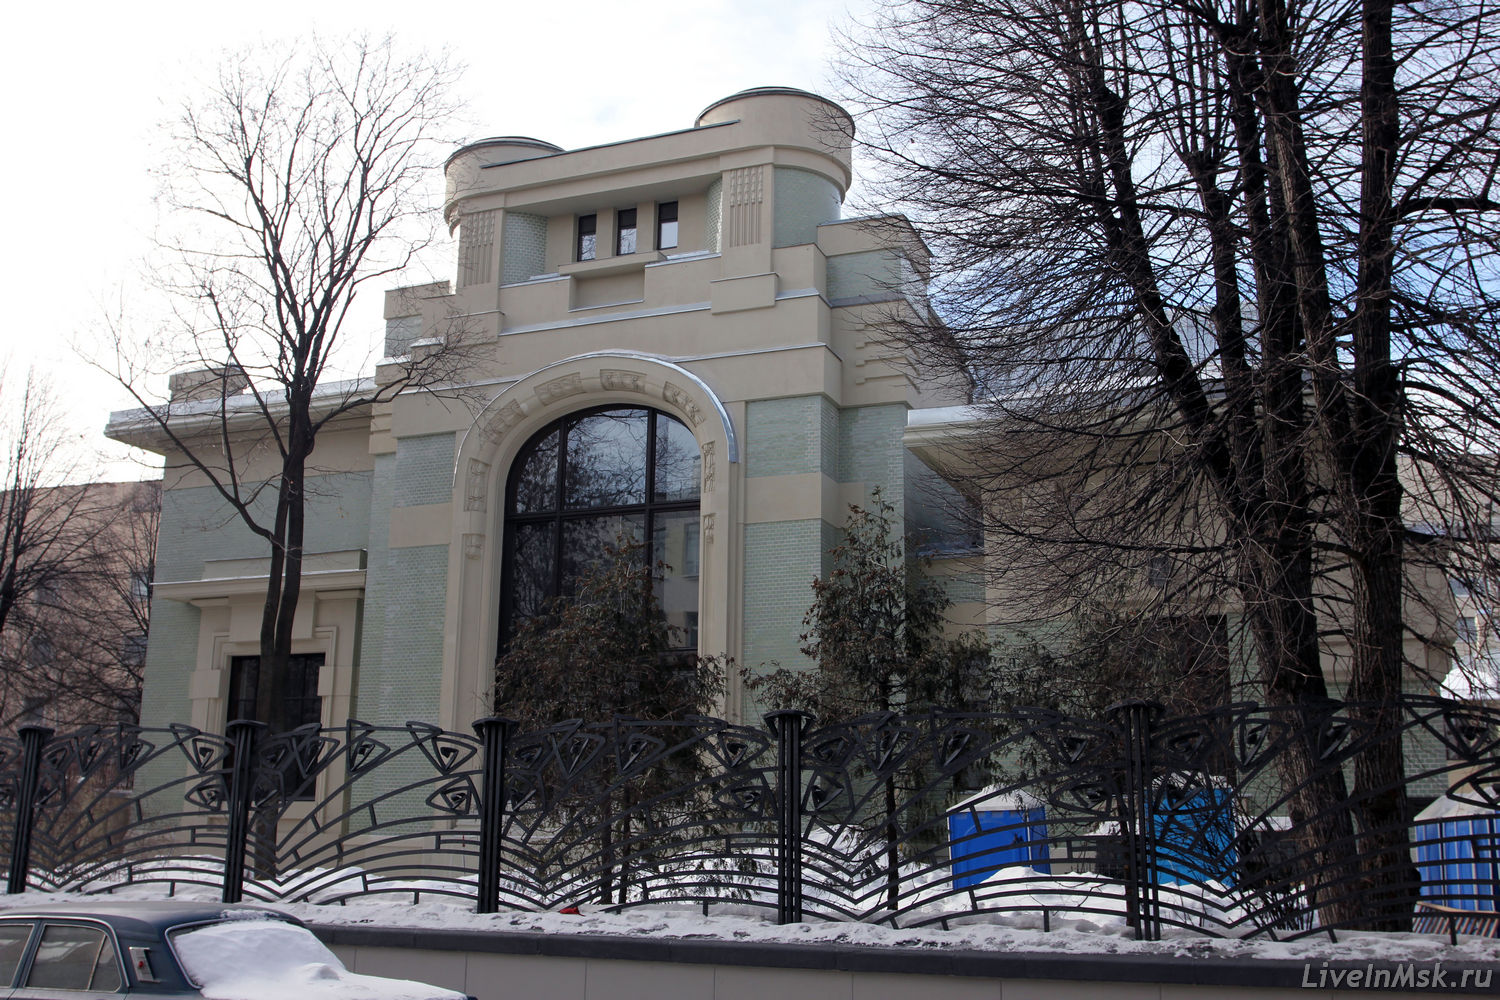 Дом Дерожинской, фото 2014 года